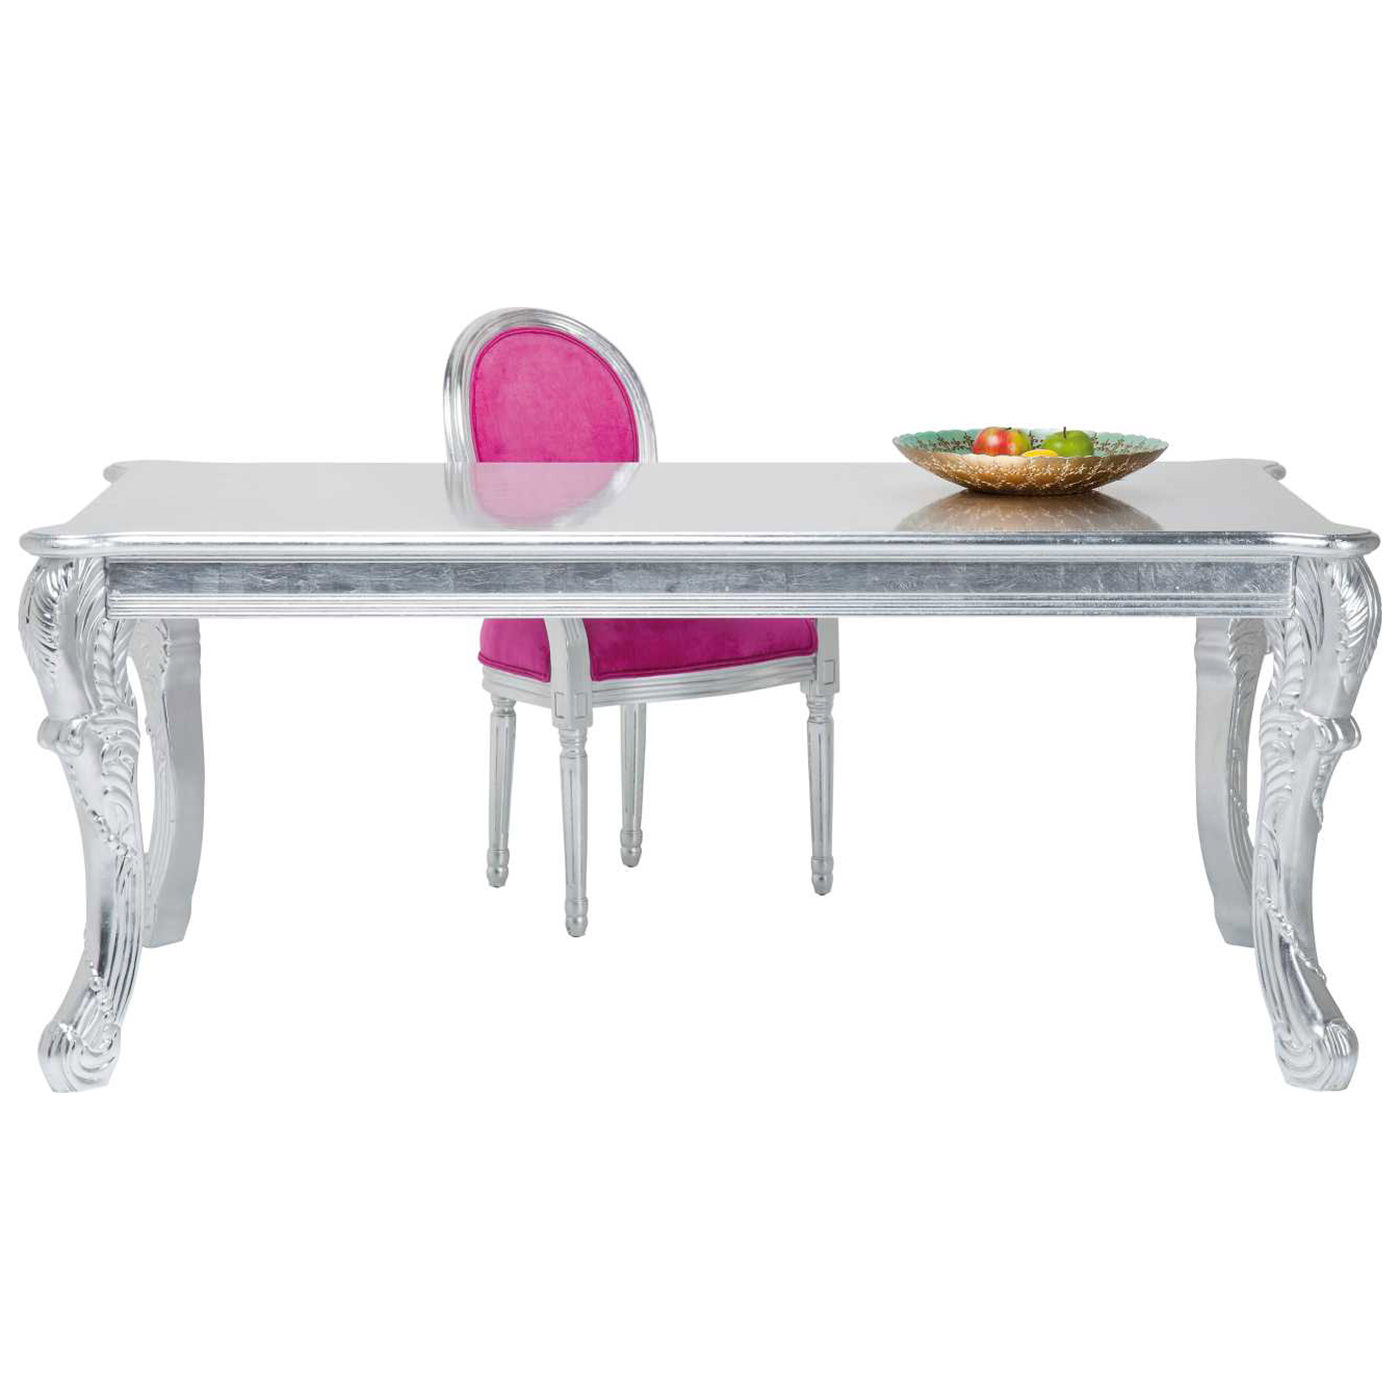 TI 1353 307 6 – Table Romantico Silver 180x95cm (4)